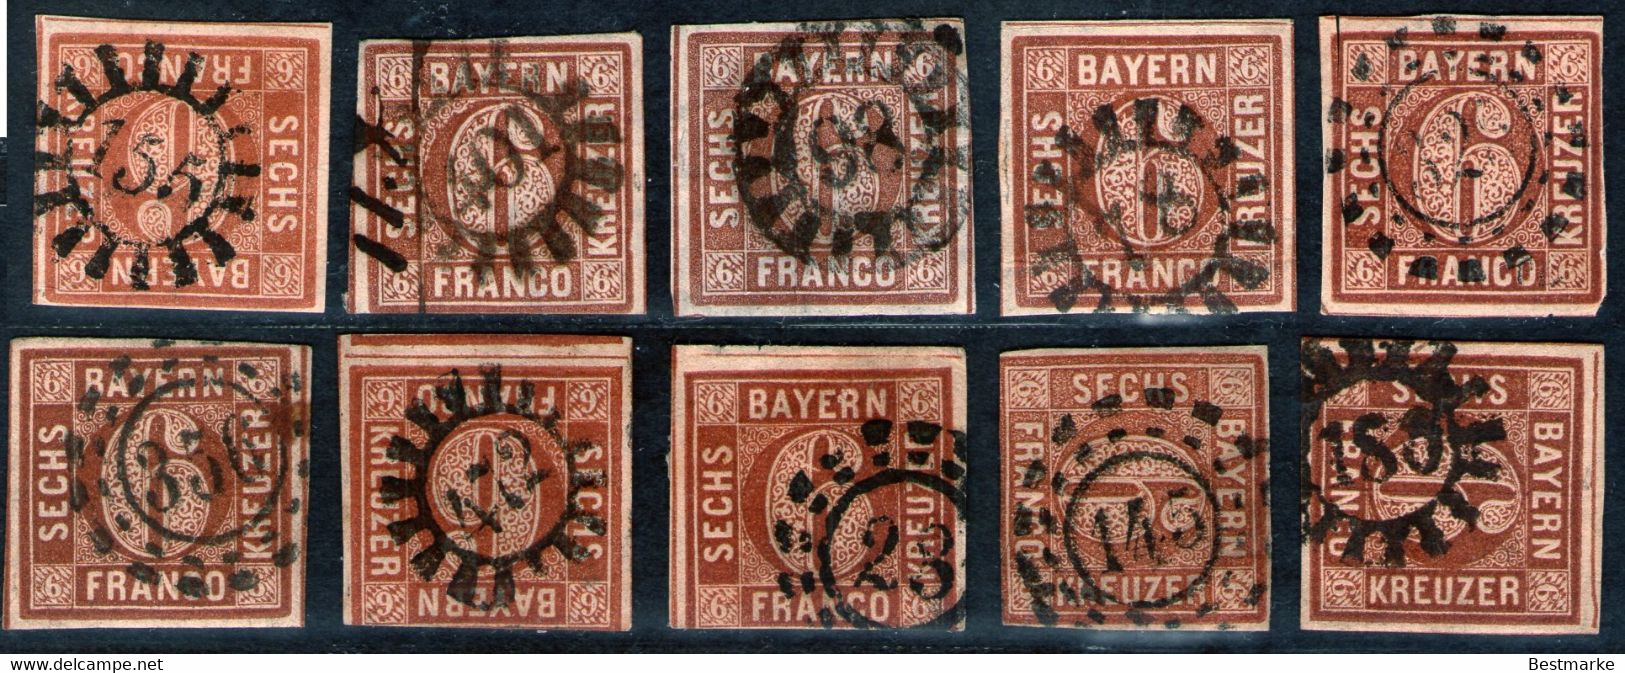 Bayern Lot 2461 - 10 Mal Nr. 4 - Stempel GMR Und OMR, Farben, Papiersorten, Breitrandige Stücke - Colecciones